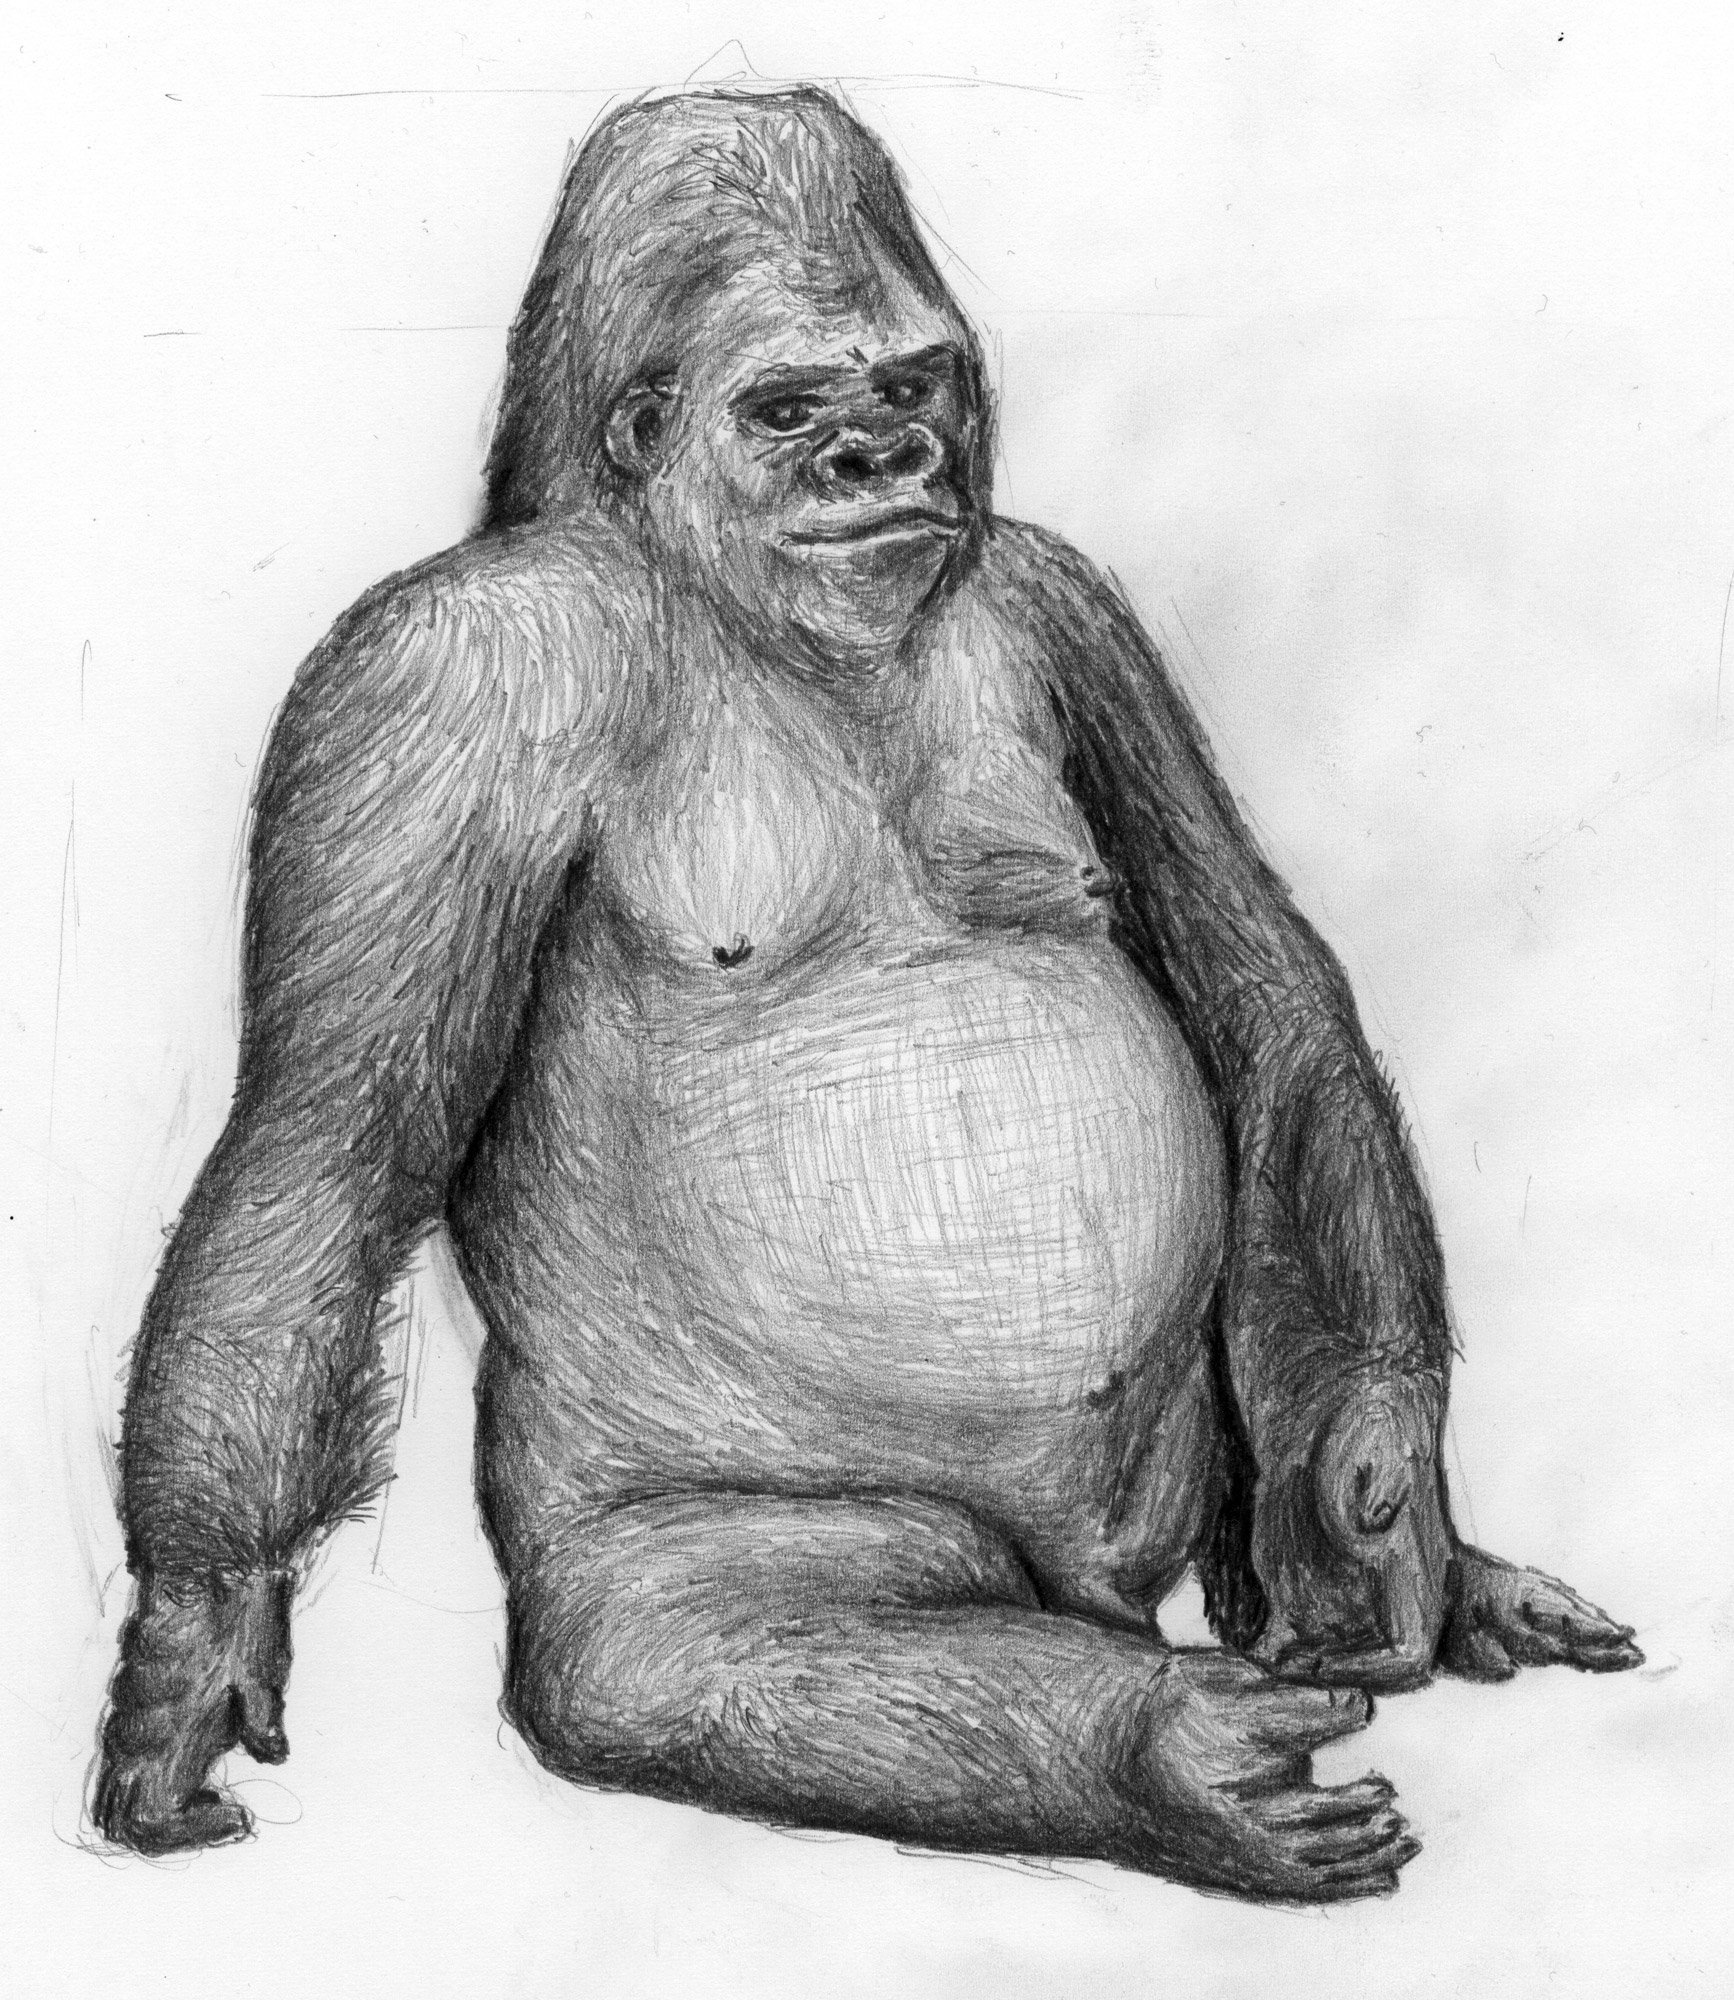 Zeichnung eines sitzenden Gorillas